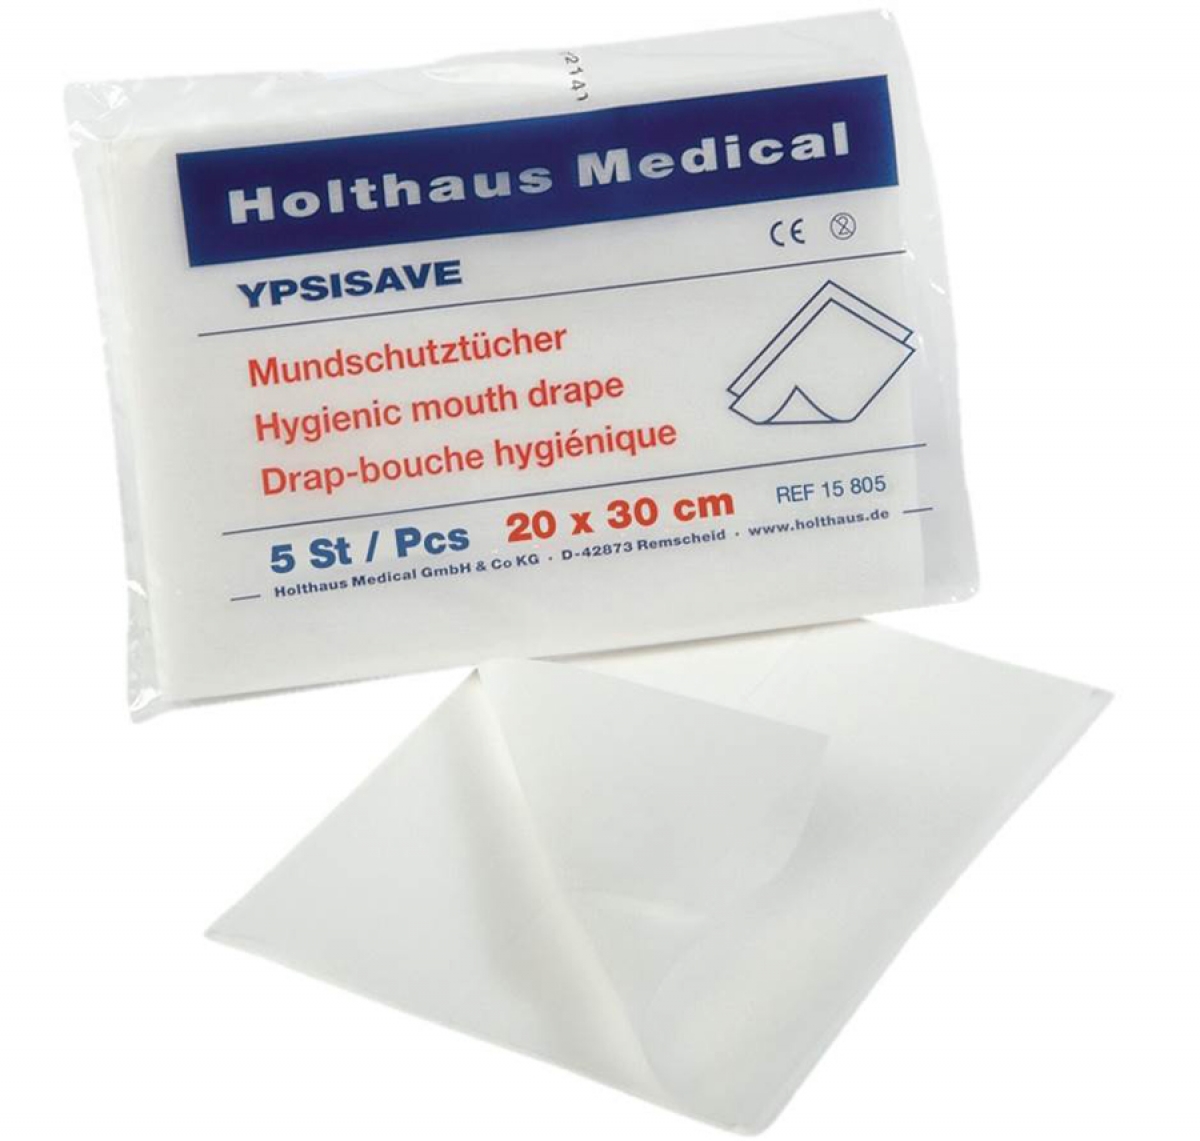 Holthaus Medical, Erste-Hilfe, YPSISAVE Mundschutztcher , 20 x 30 cm